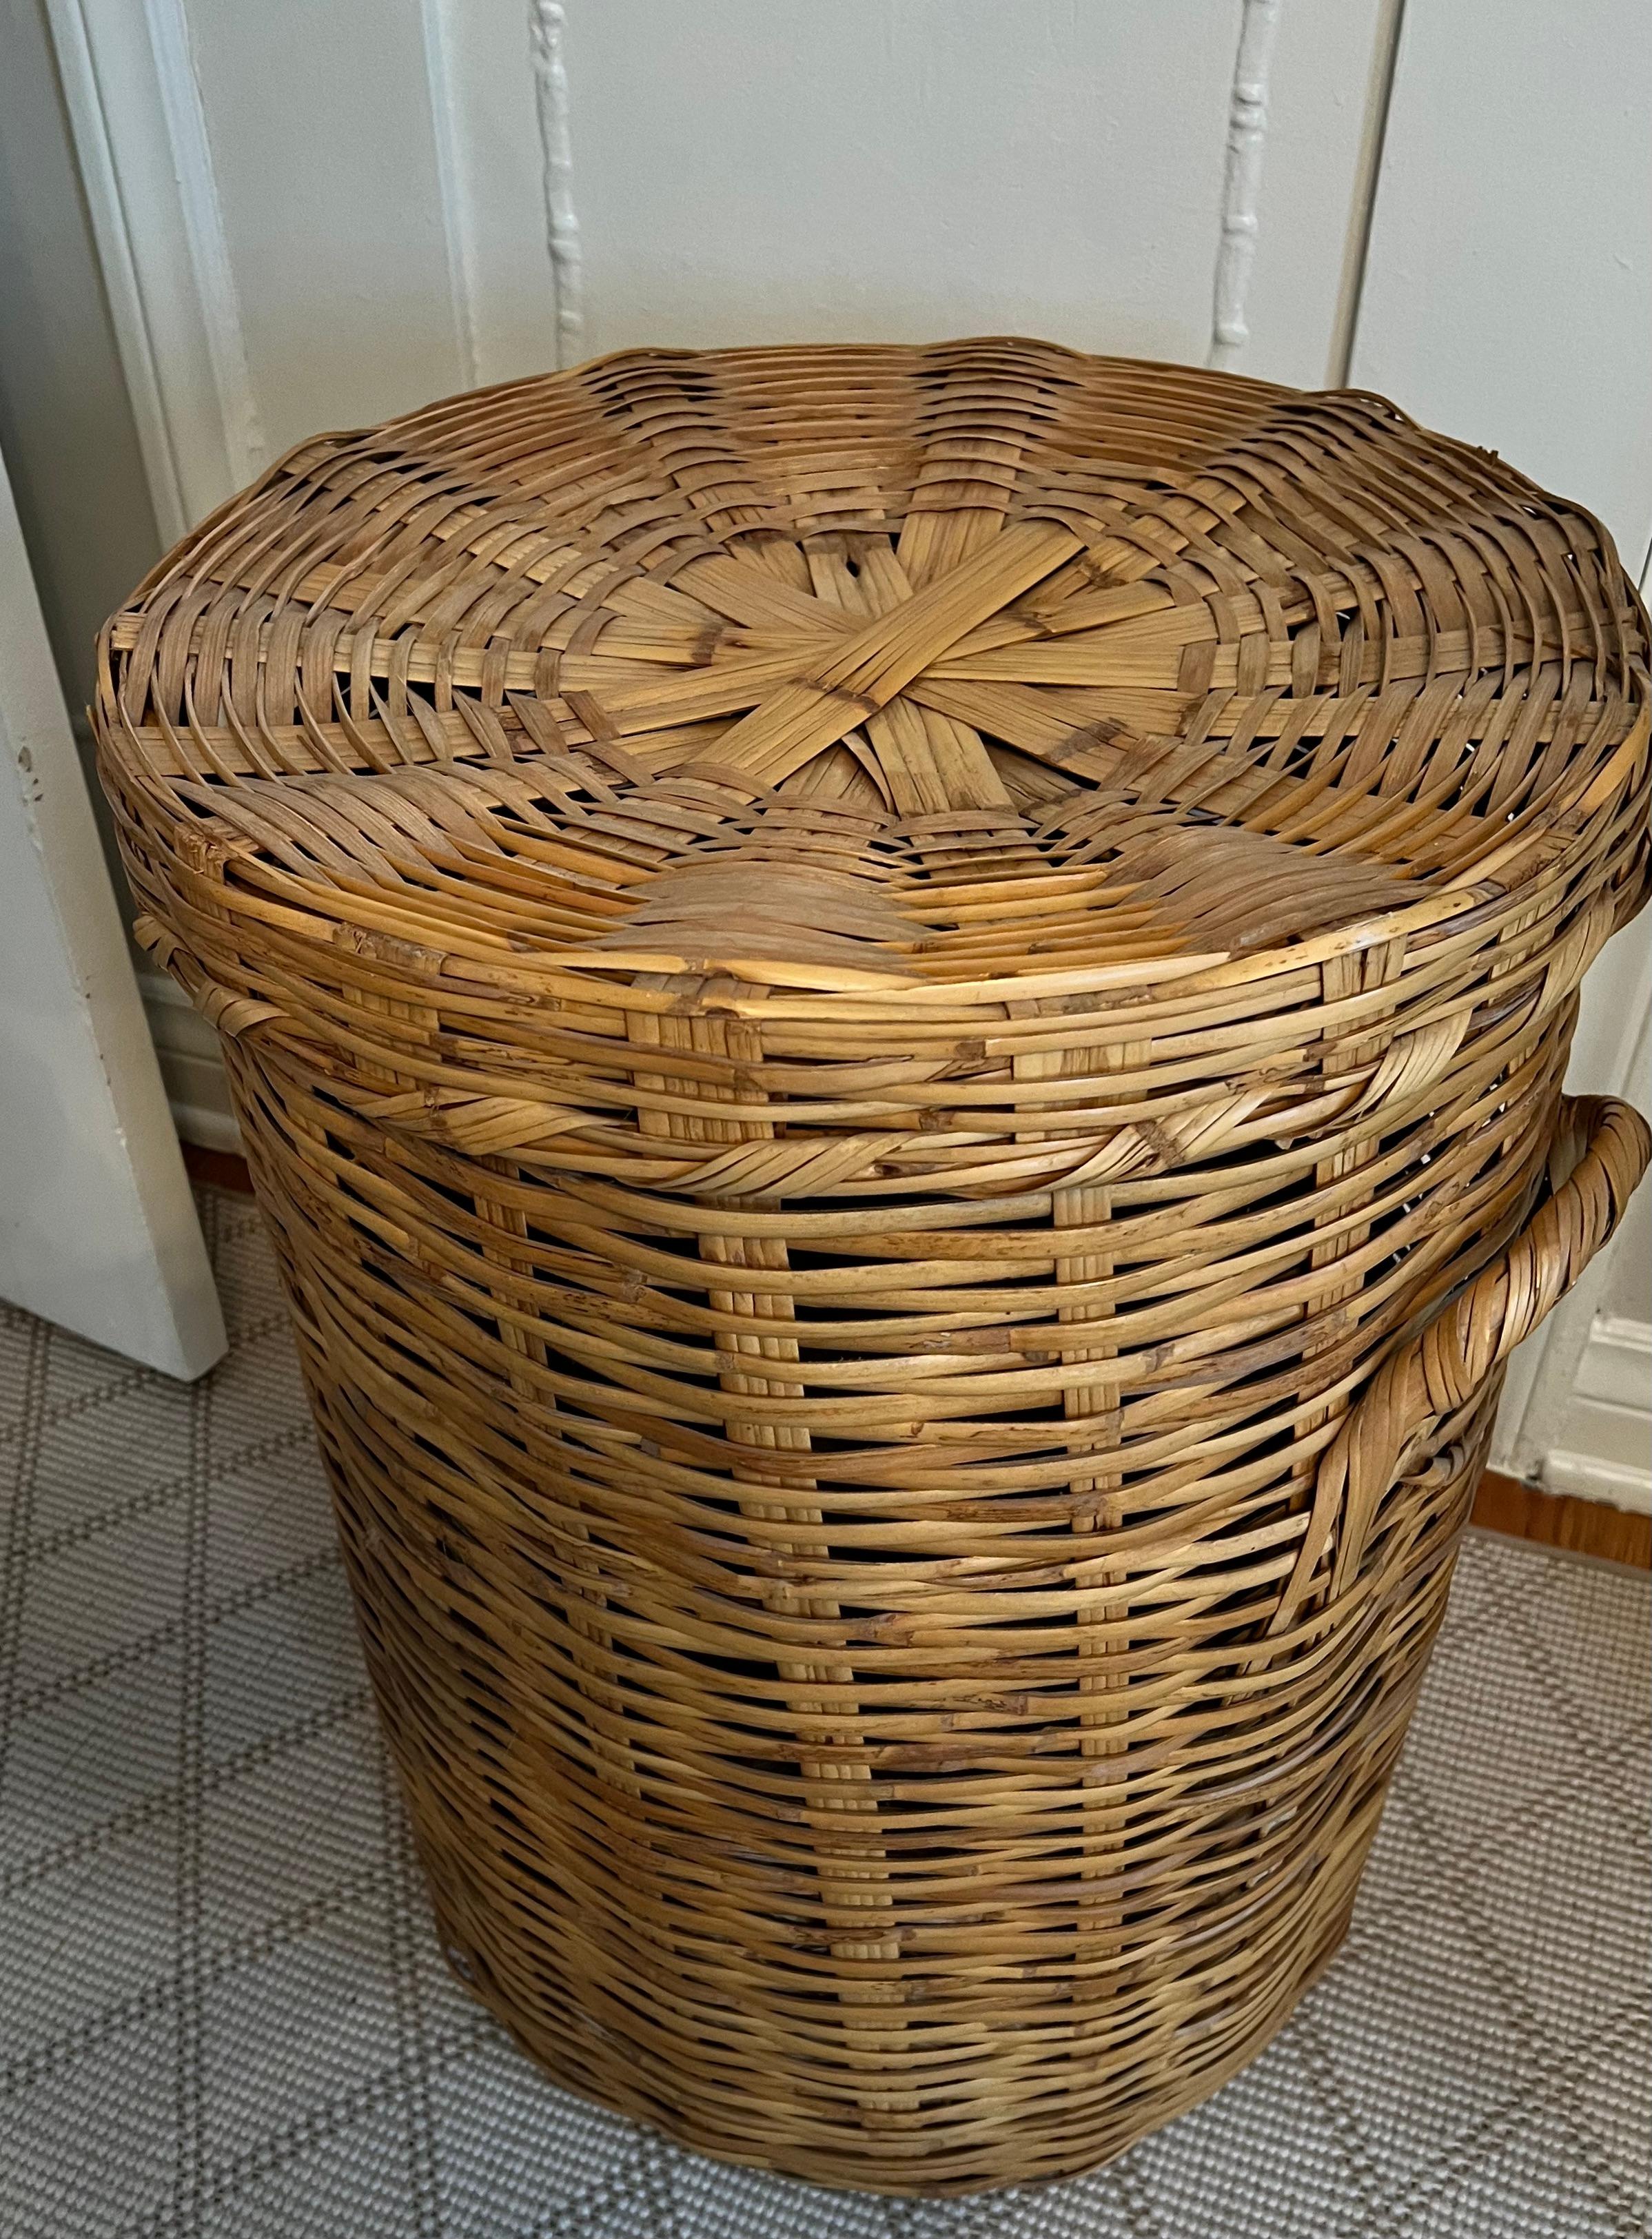 woven wicker laundry basket